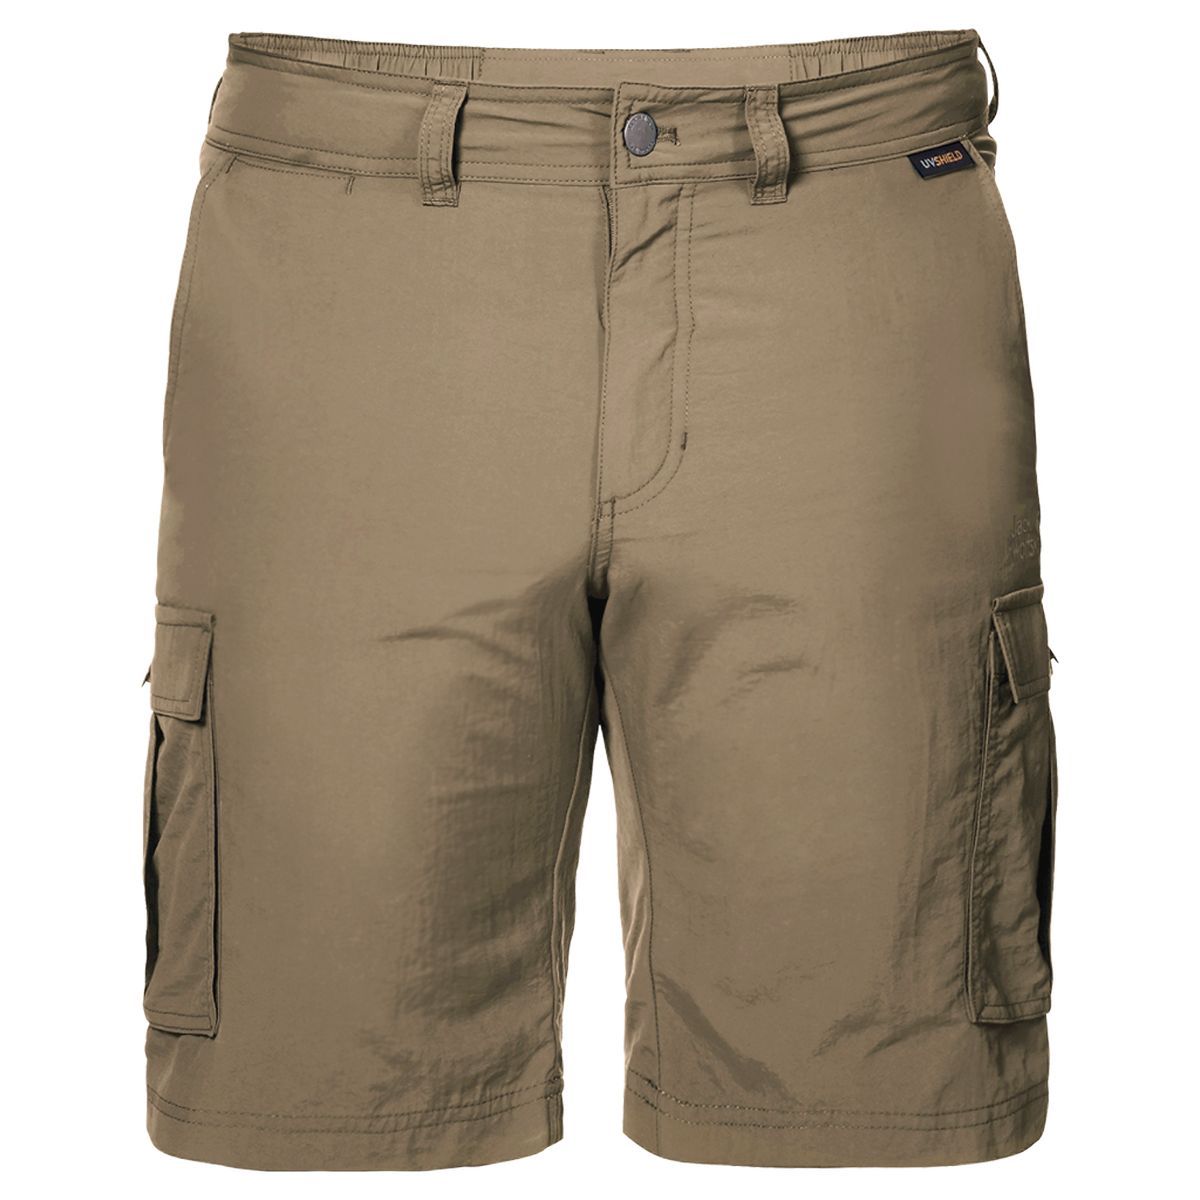   Jack Wolfskin Canyon Cargo Shorts, : . 1504201-5605.  50